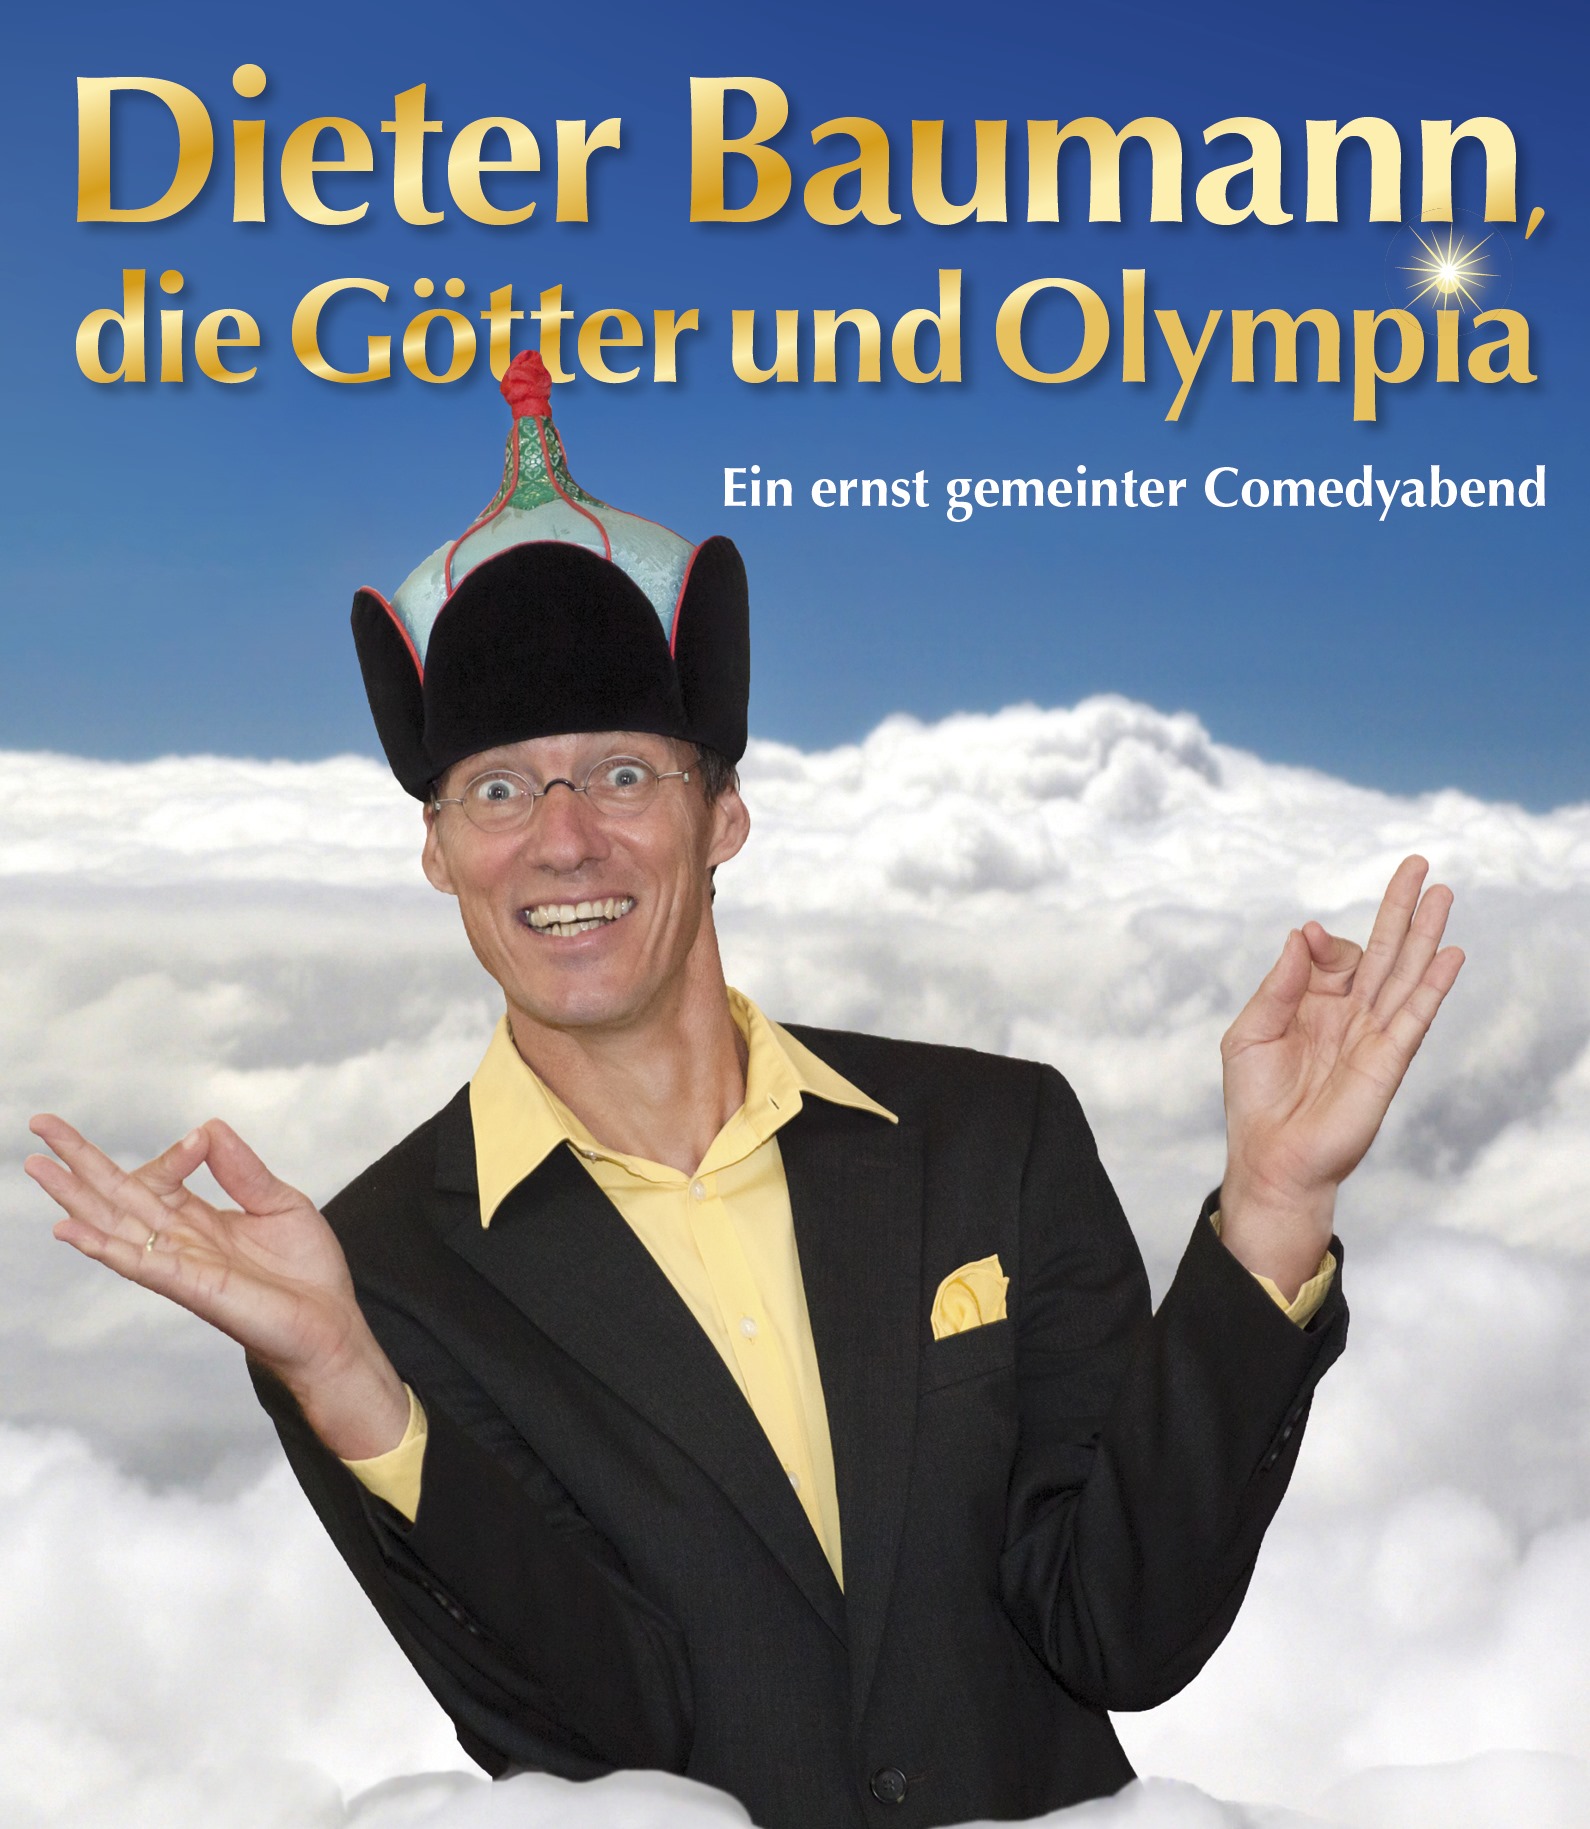 Plakat Dieter Baumann die Götter und Olympia